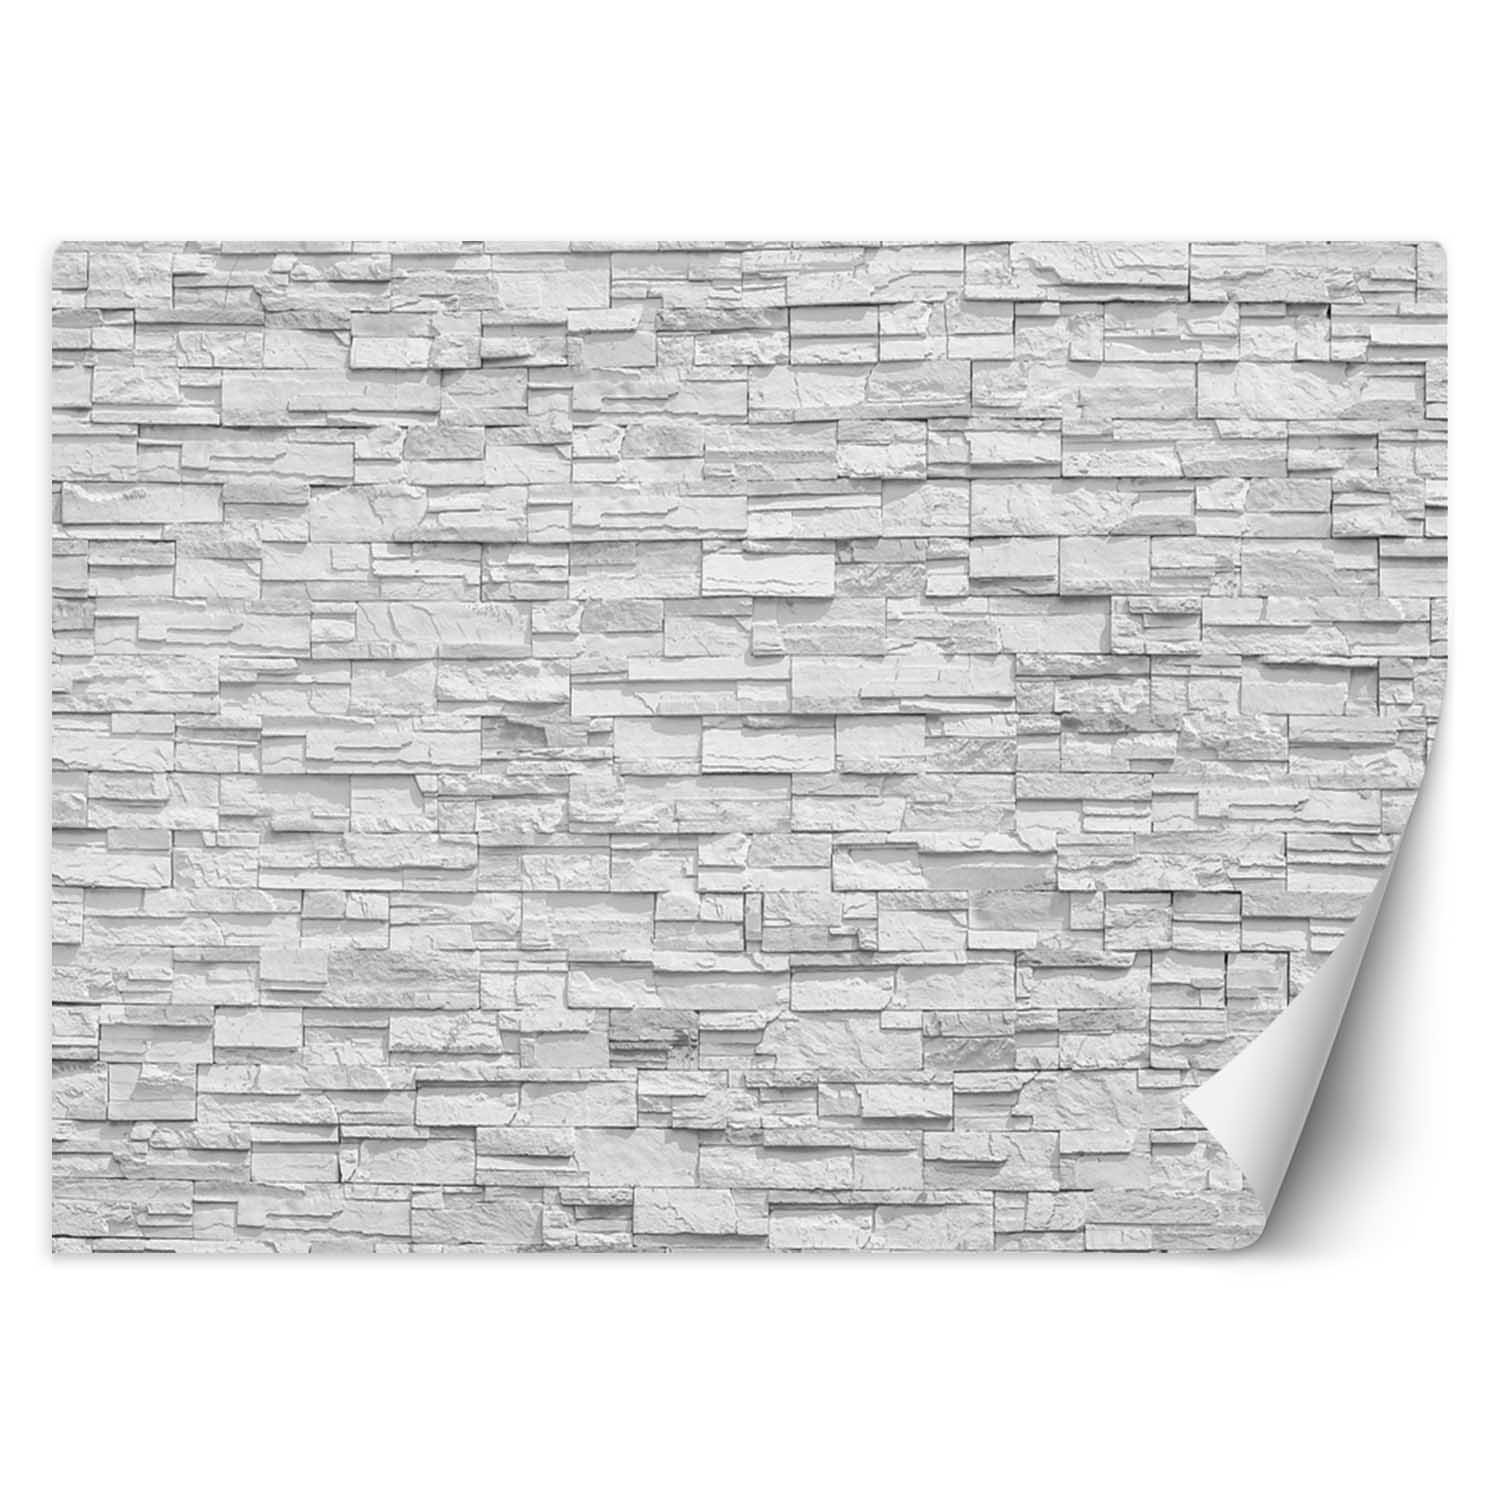 Trend24 – Behang – Witte Stenen Muur – Vliesbehang – Behang Woonkamer – Fotobehang – 350x245x2 cm – Incl. behanglijm